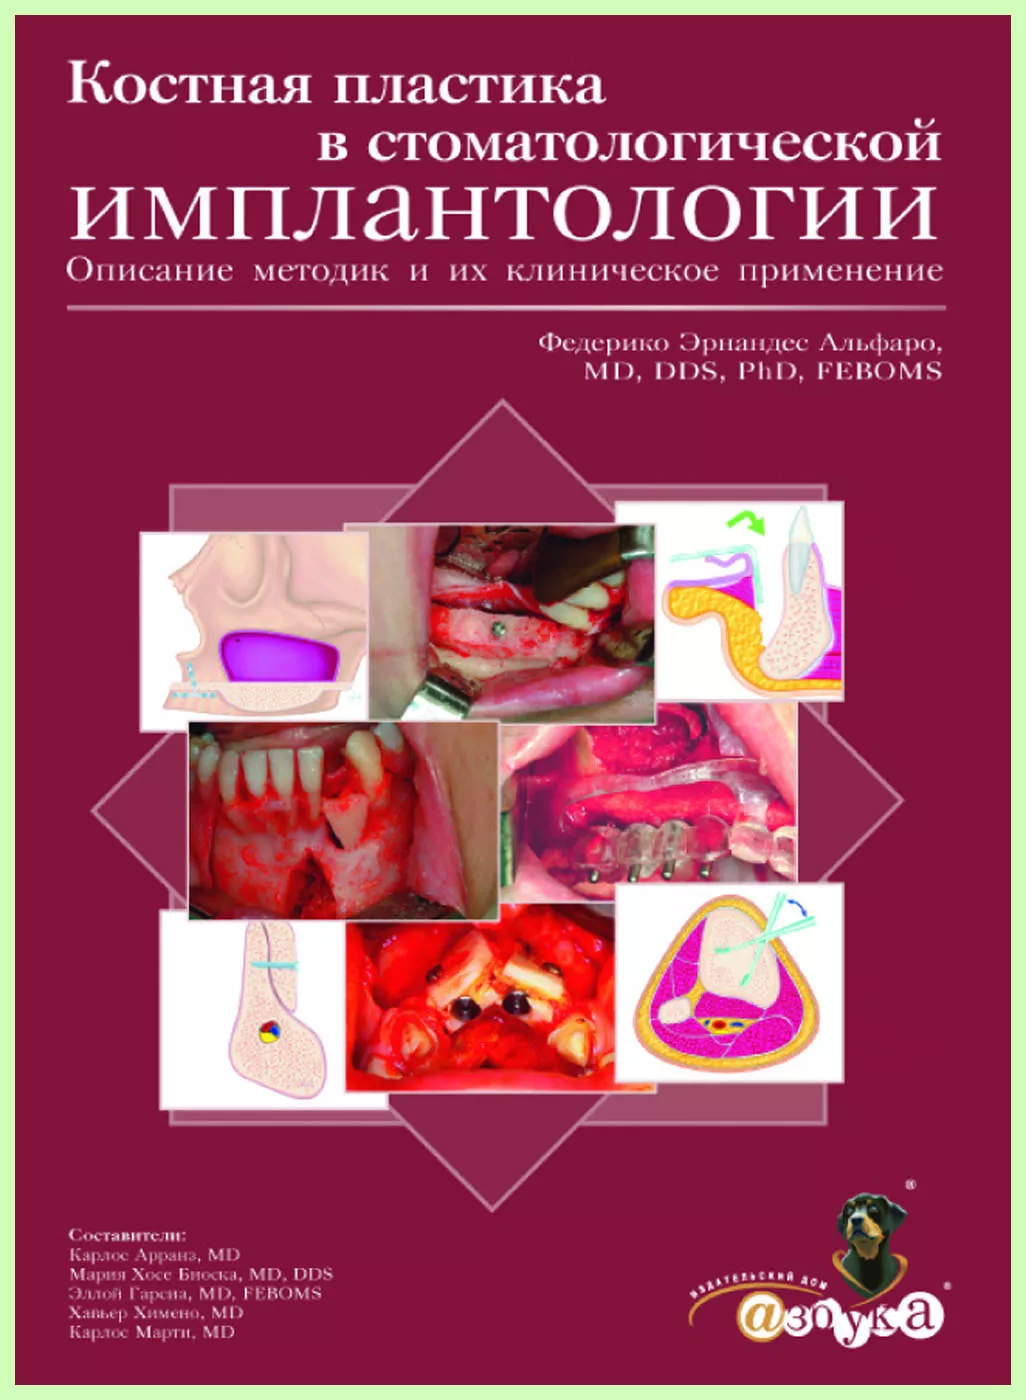 Костная пластика в стоматологической имплантологии / Ф. Альфаро